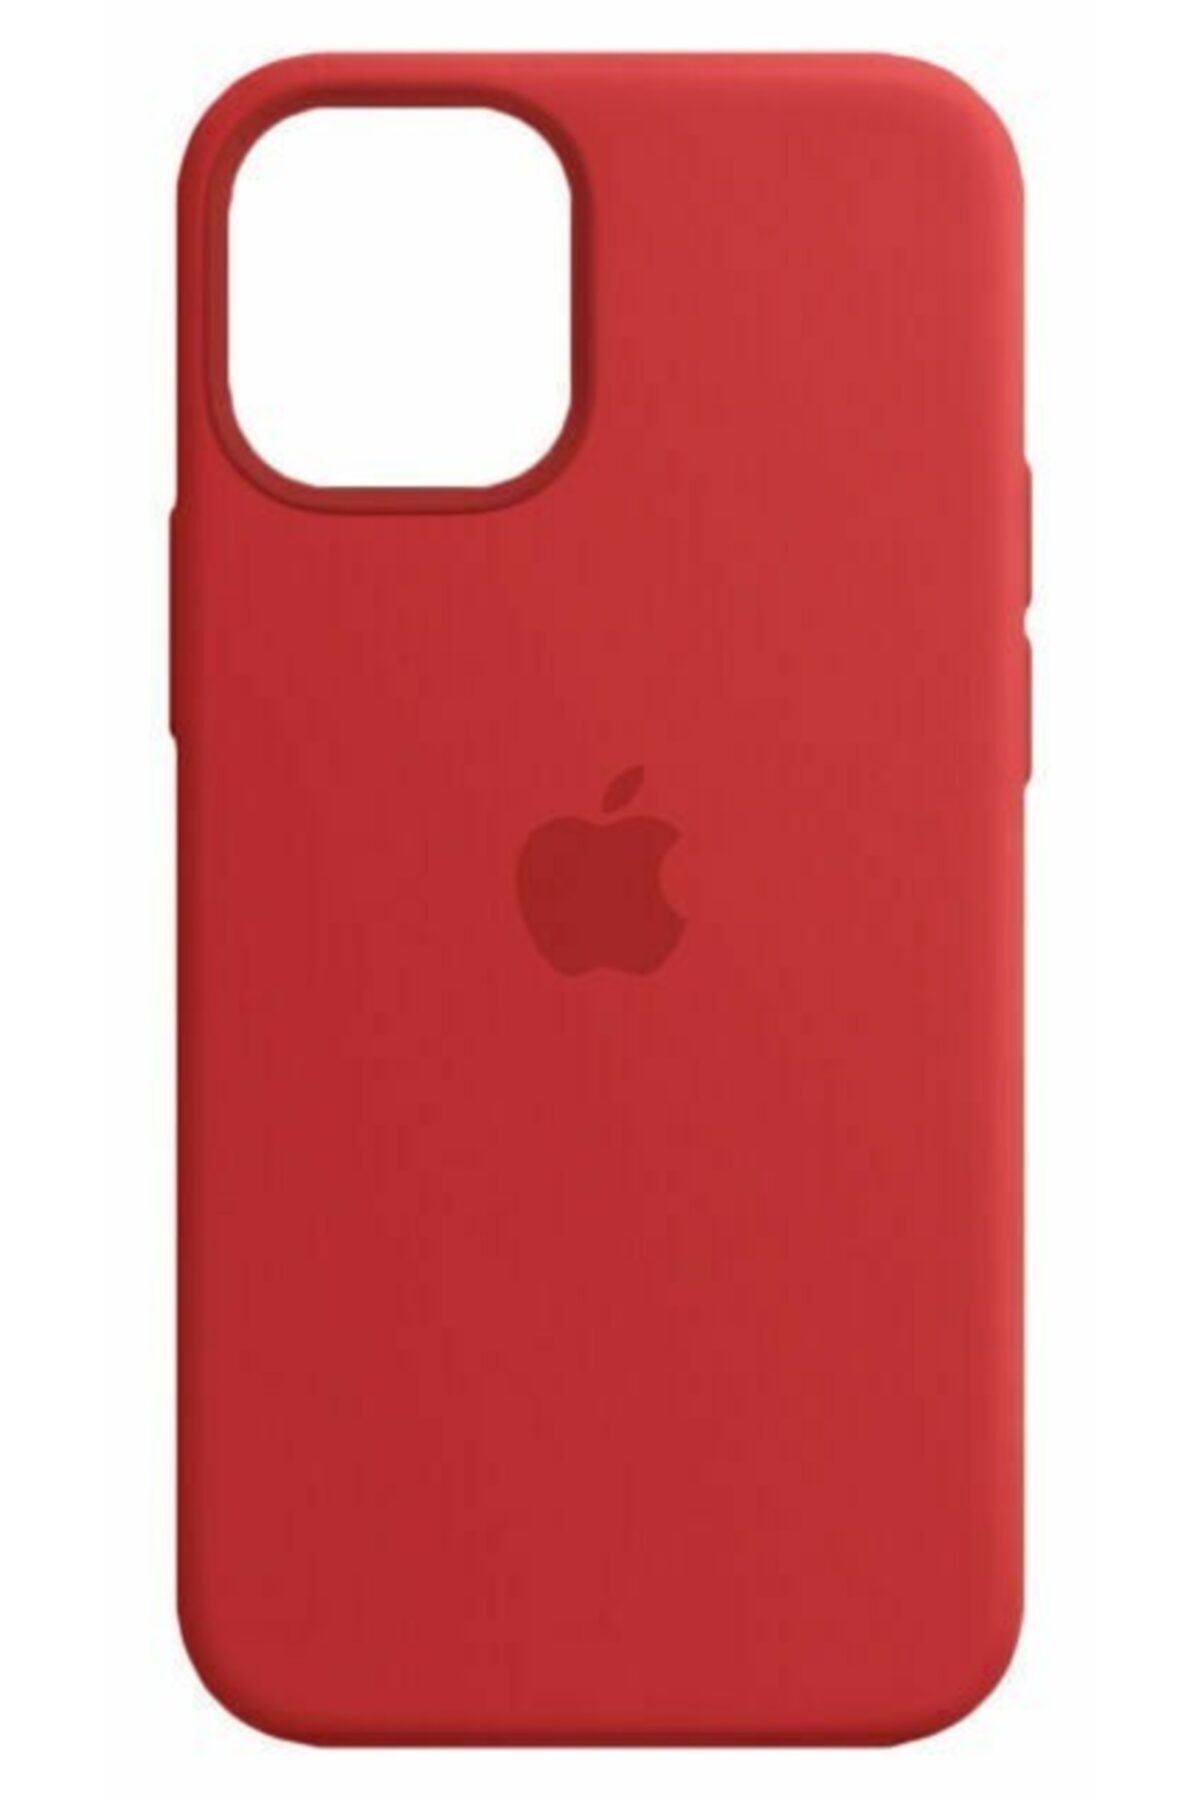 Apple Iphone 12 Mını Sılıcone Case Red Wıth Magsafe